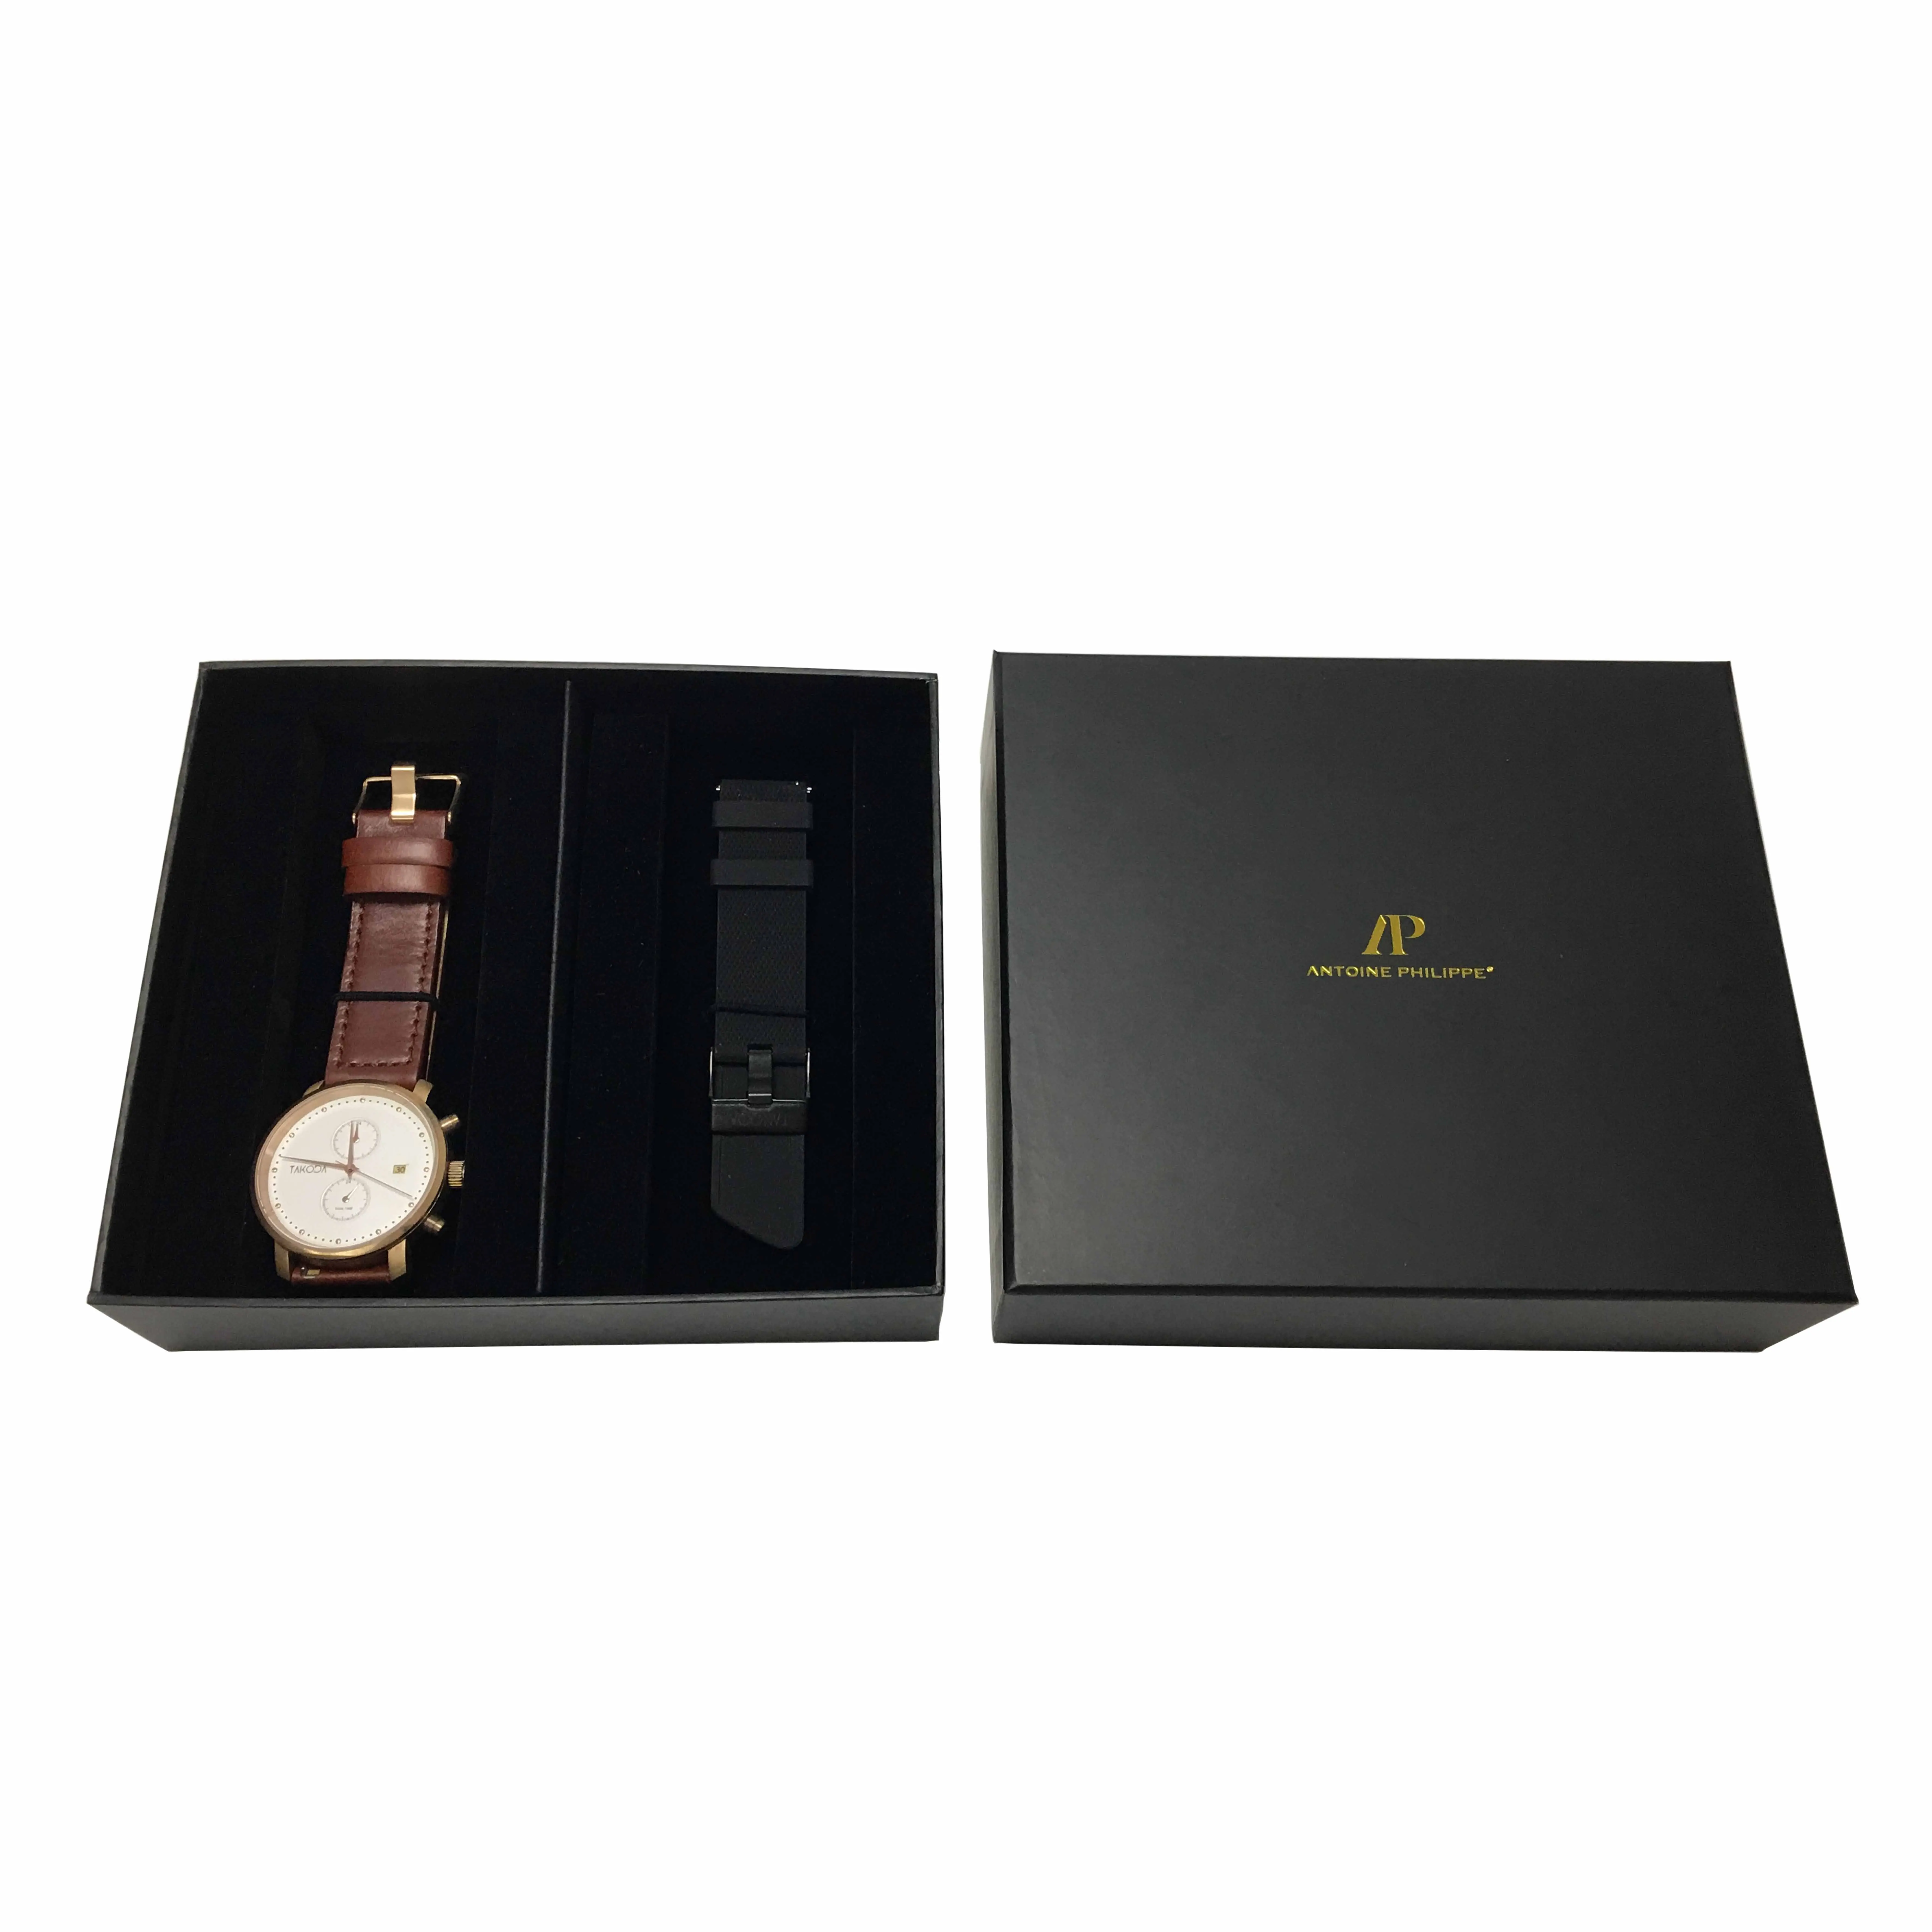 Watch Box Watch Packaging Box Cheap Watch Gift Box - Buy Watch ...